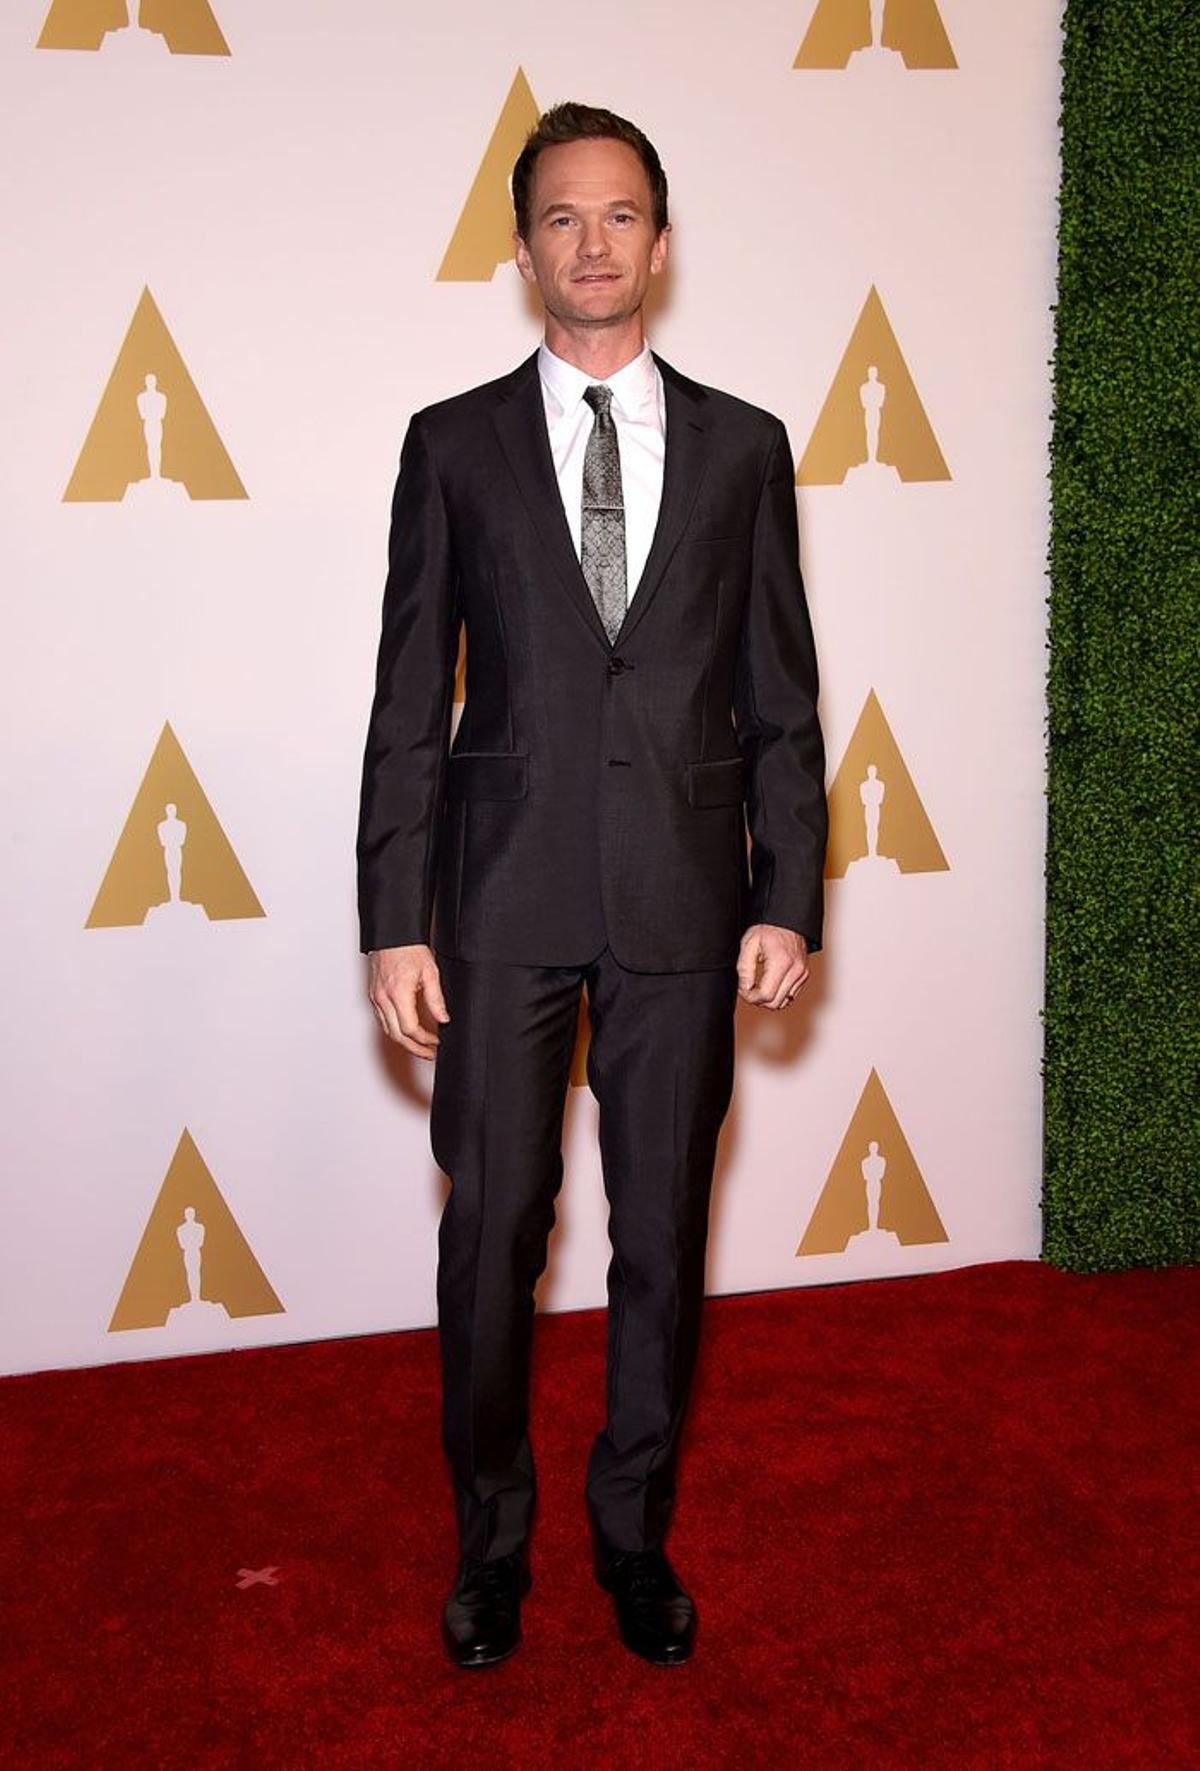 Almuerzo de los nominados Oscar 2015: Neil Patrick Harris